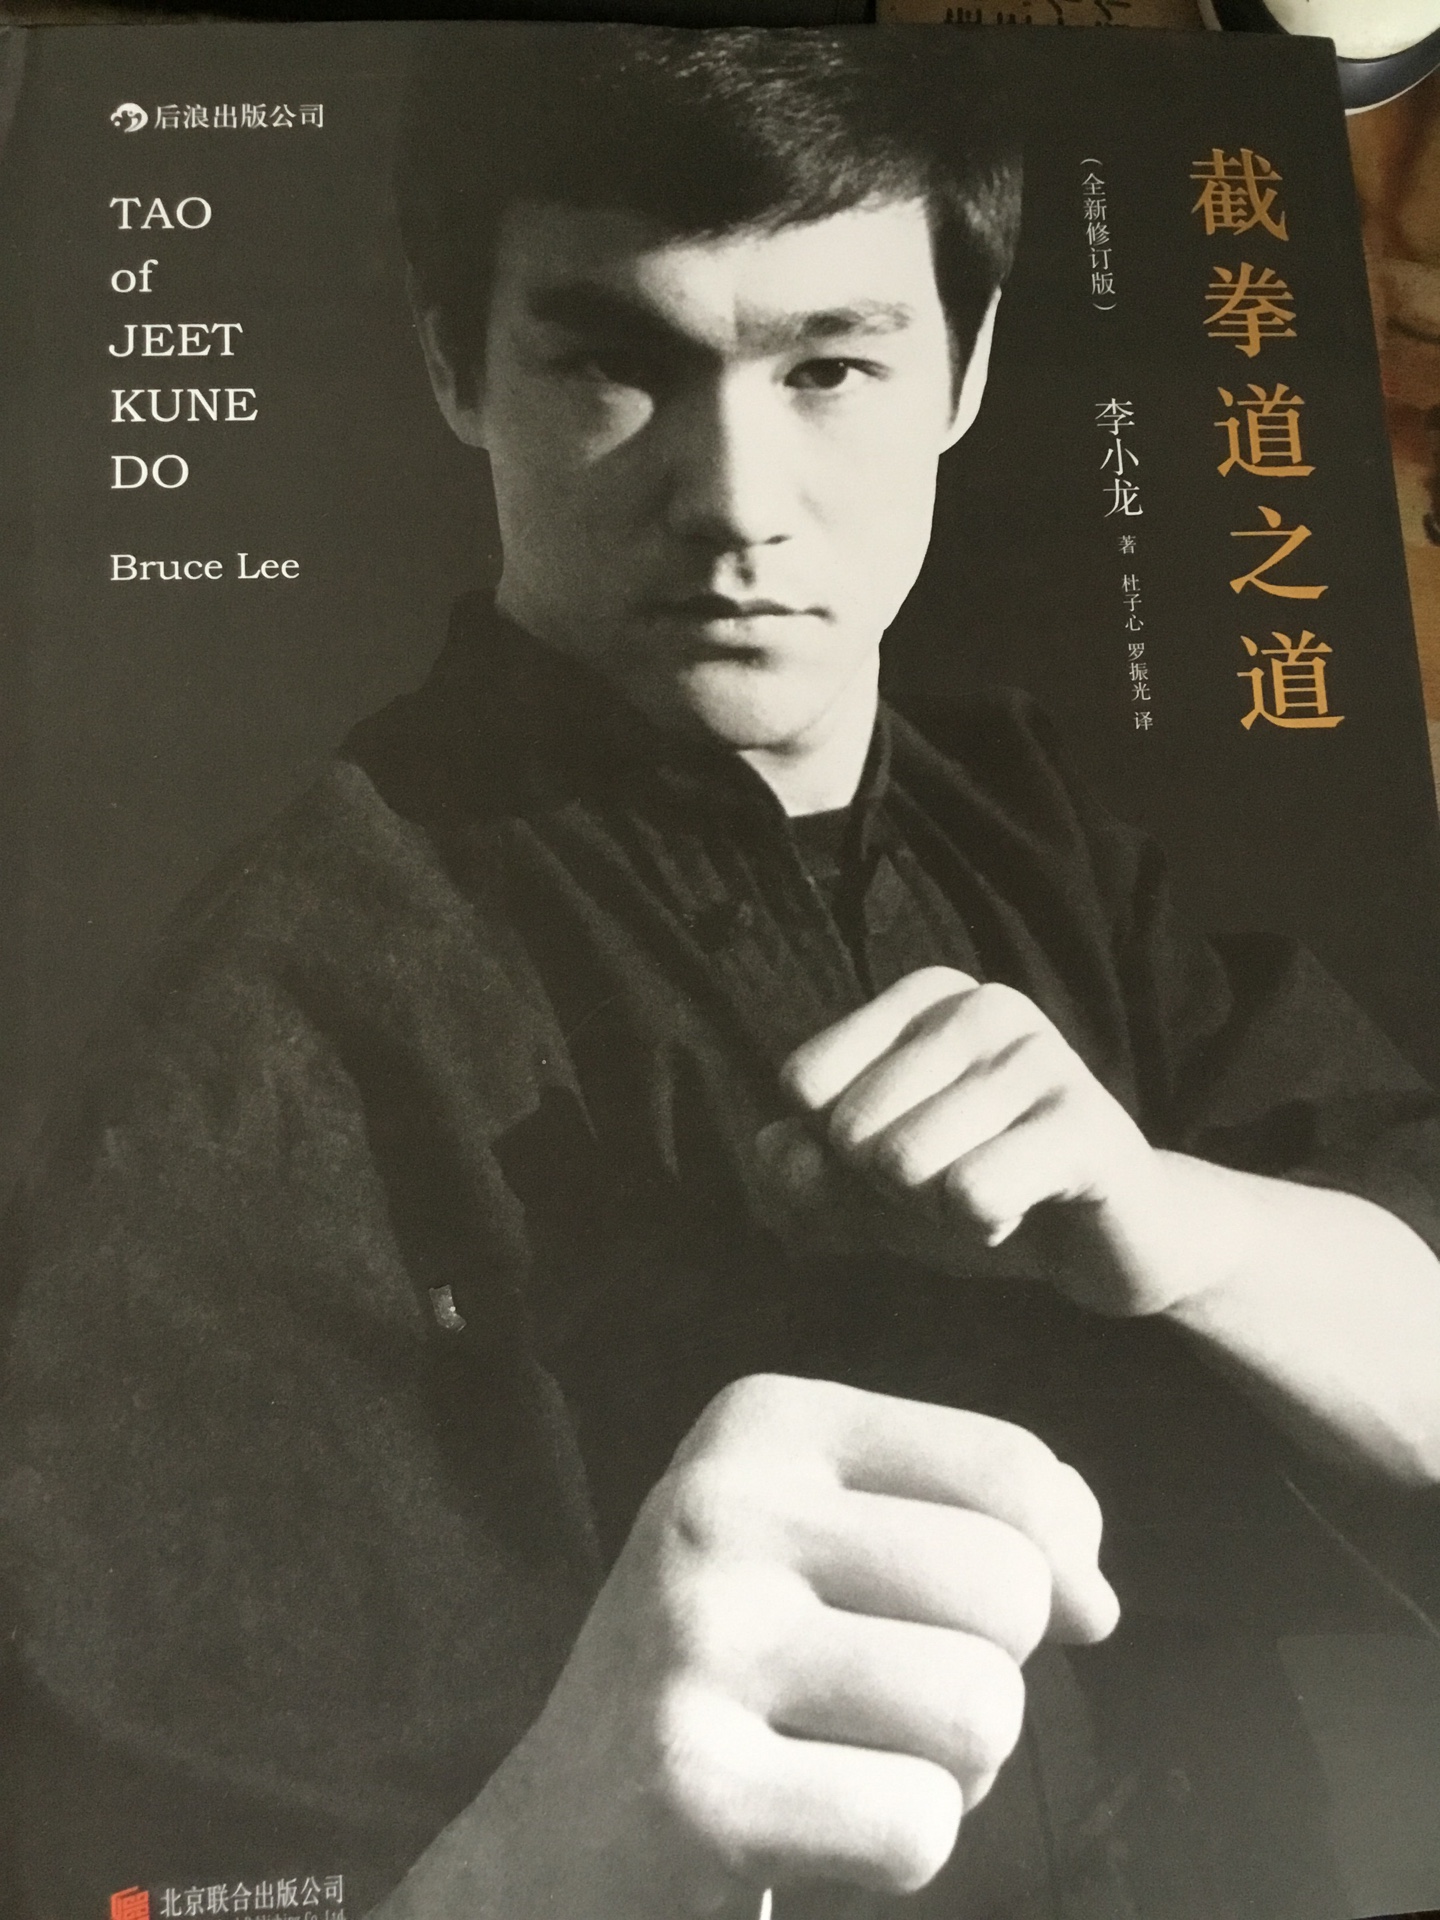 这不是讲拳法的，是李小龙的武学精髓，截拳道不是拳法，而是武学思想，李小龙也不是武夫，是哲学家，武学哲学家，艺术家，